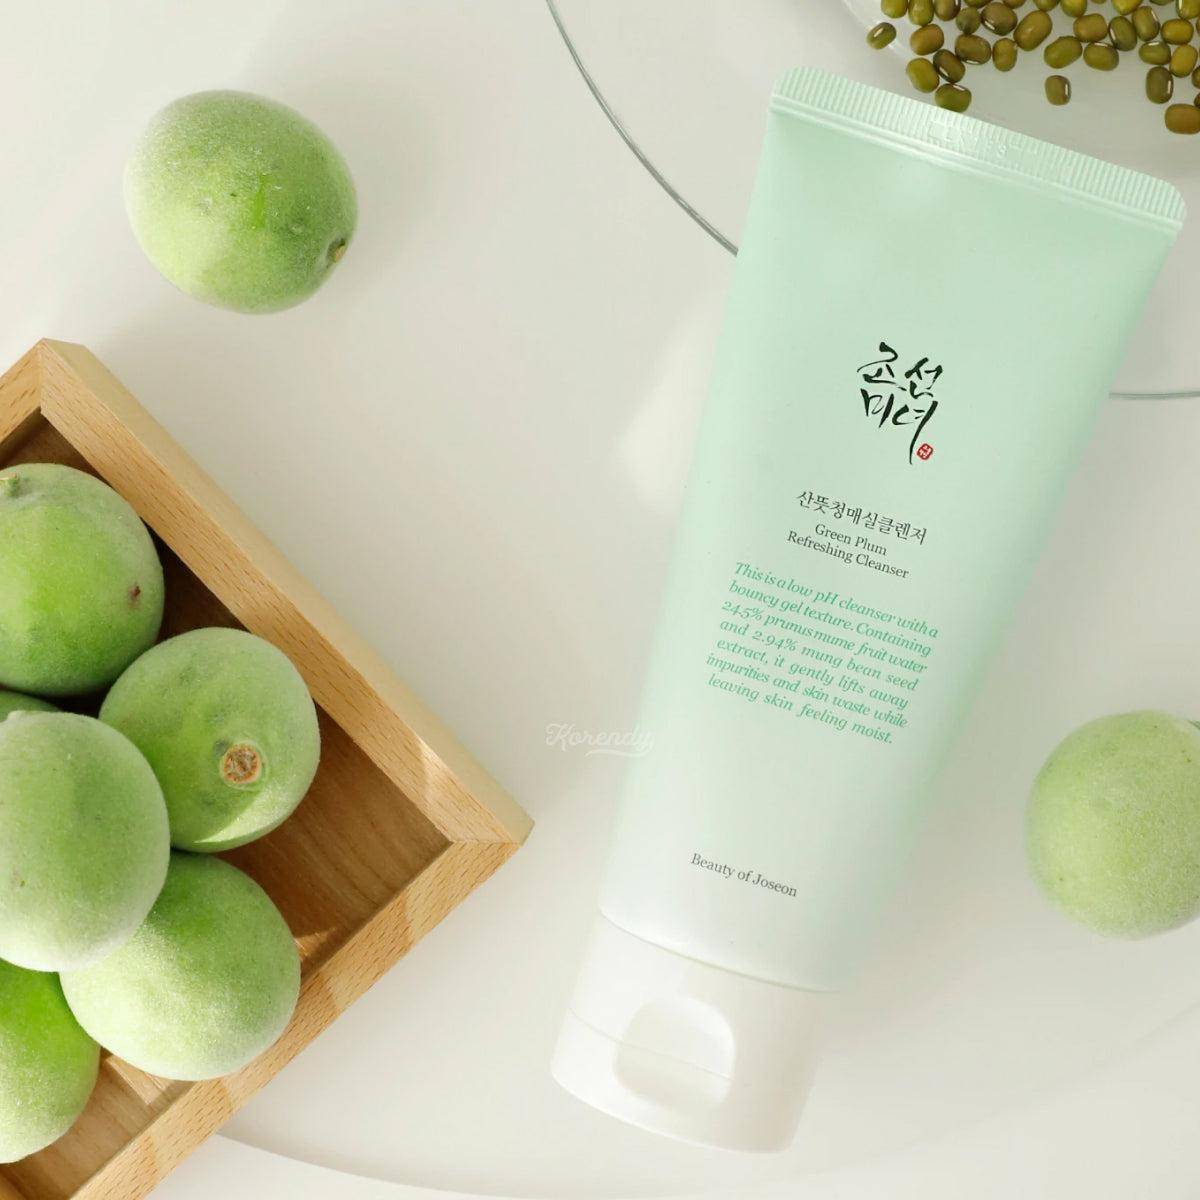 Beauty Joseon Green Plum Refreshing Cleanser Canlandırıcı Erikli Jel Temizleyici ml